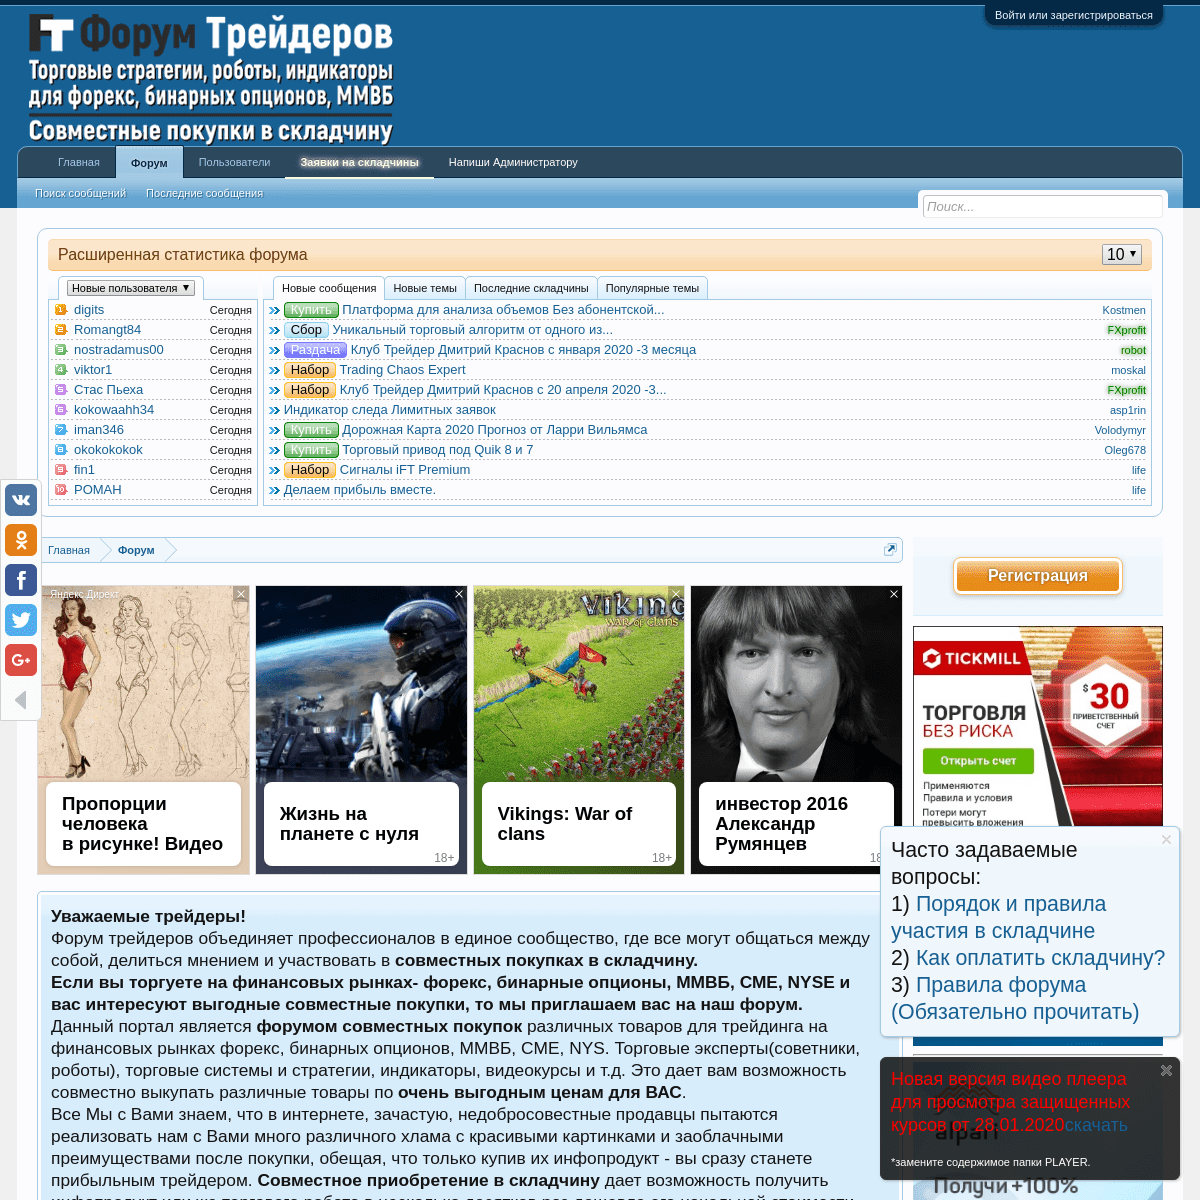 A complete backup of forum-treiderov.com